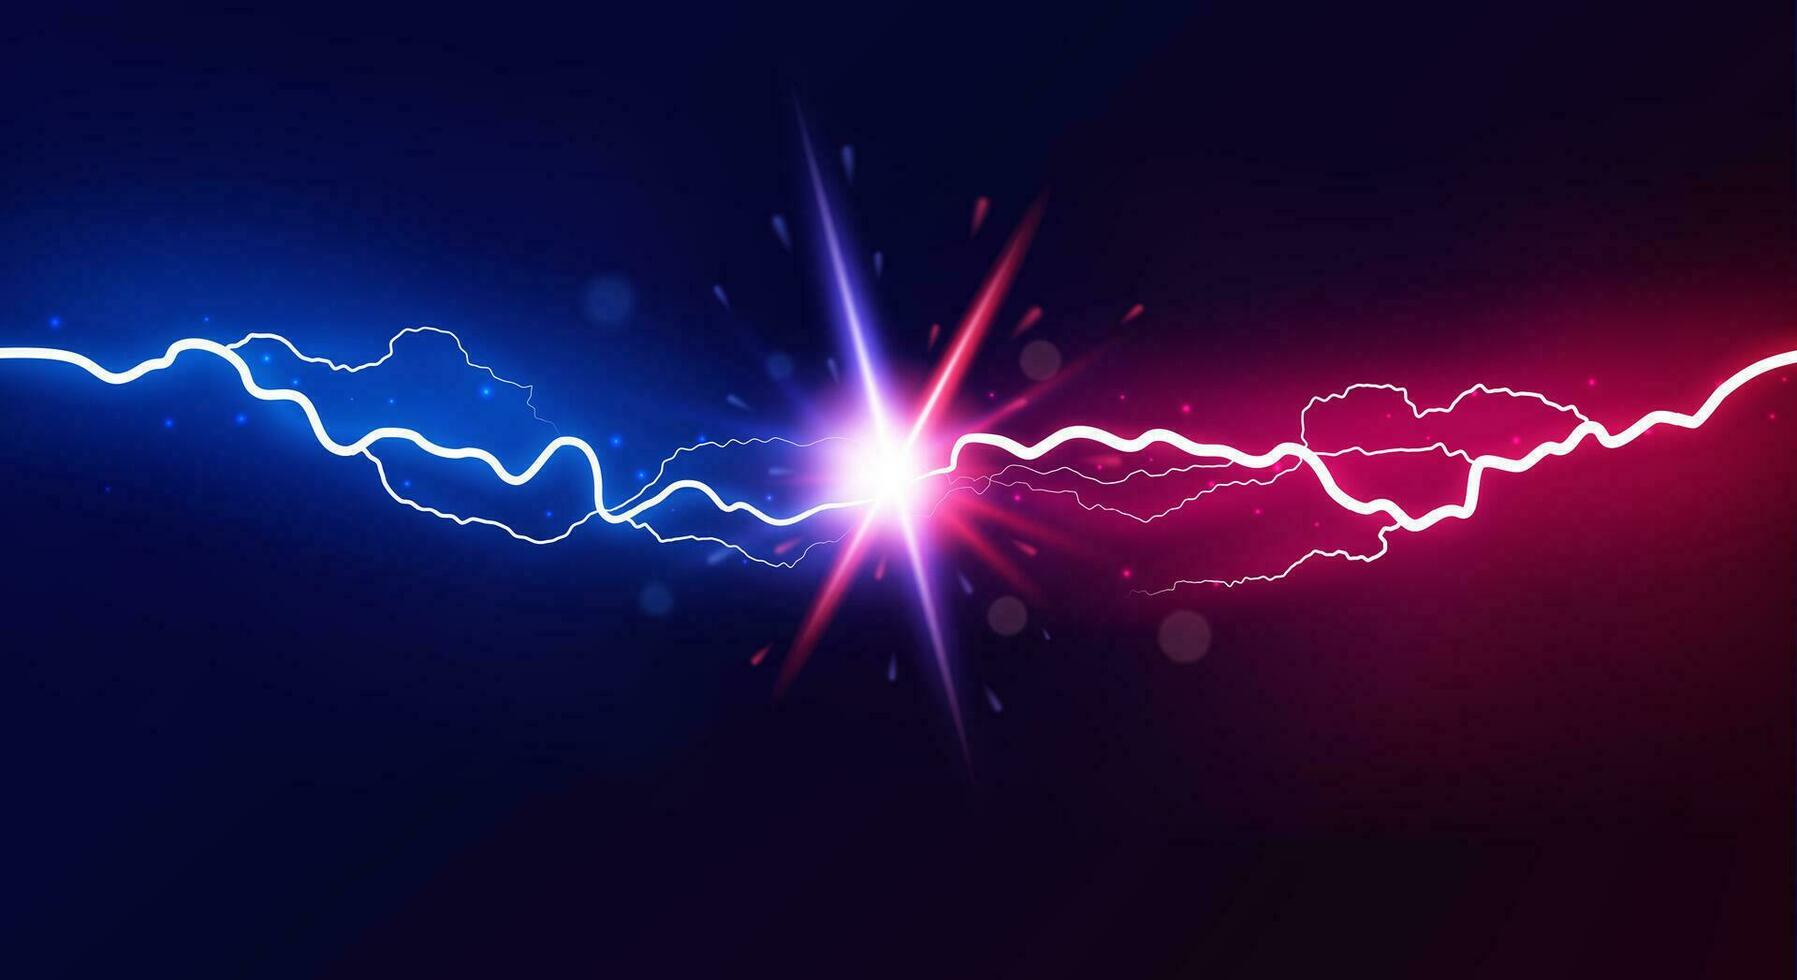 relámpago colisión. poderoso de colores relámpagos, eléctrico efectivo rayo choque eléctrico energía espumoso explosión, vector versus brillante diseño confrontación concepto